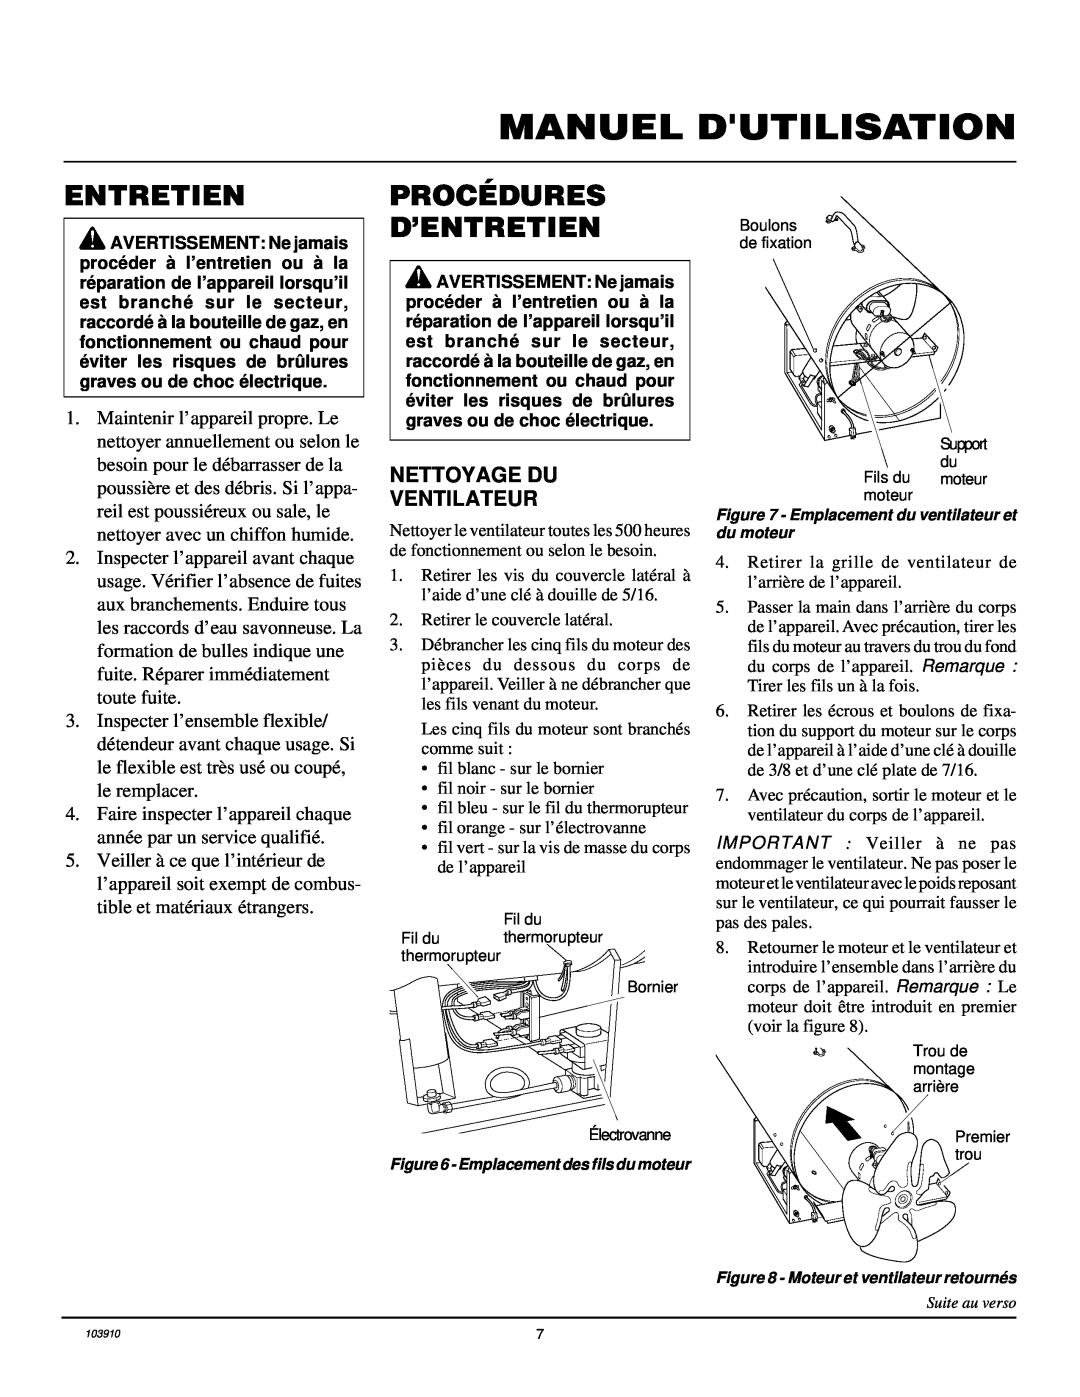 Desa RCLP375B owner manual Procédures D’Entretien, Manuel Dutilisation, Nettoyage Du Ventilateur 